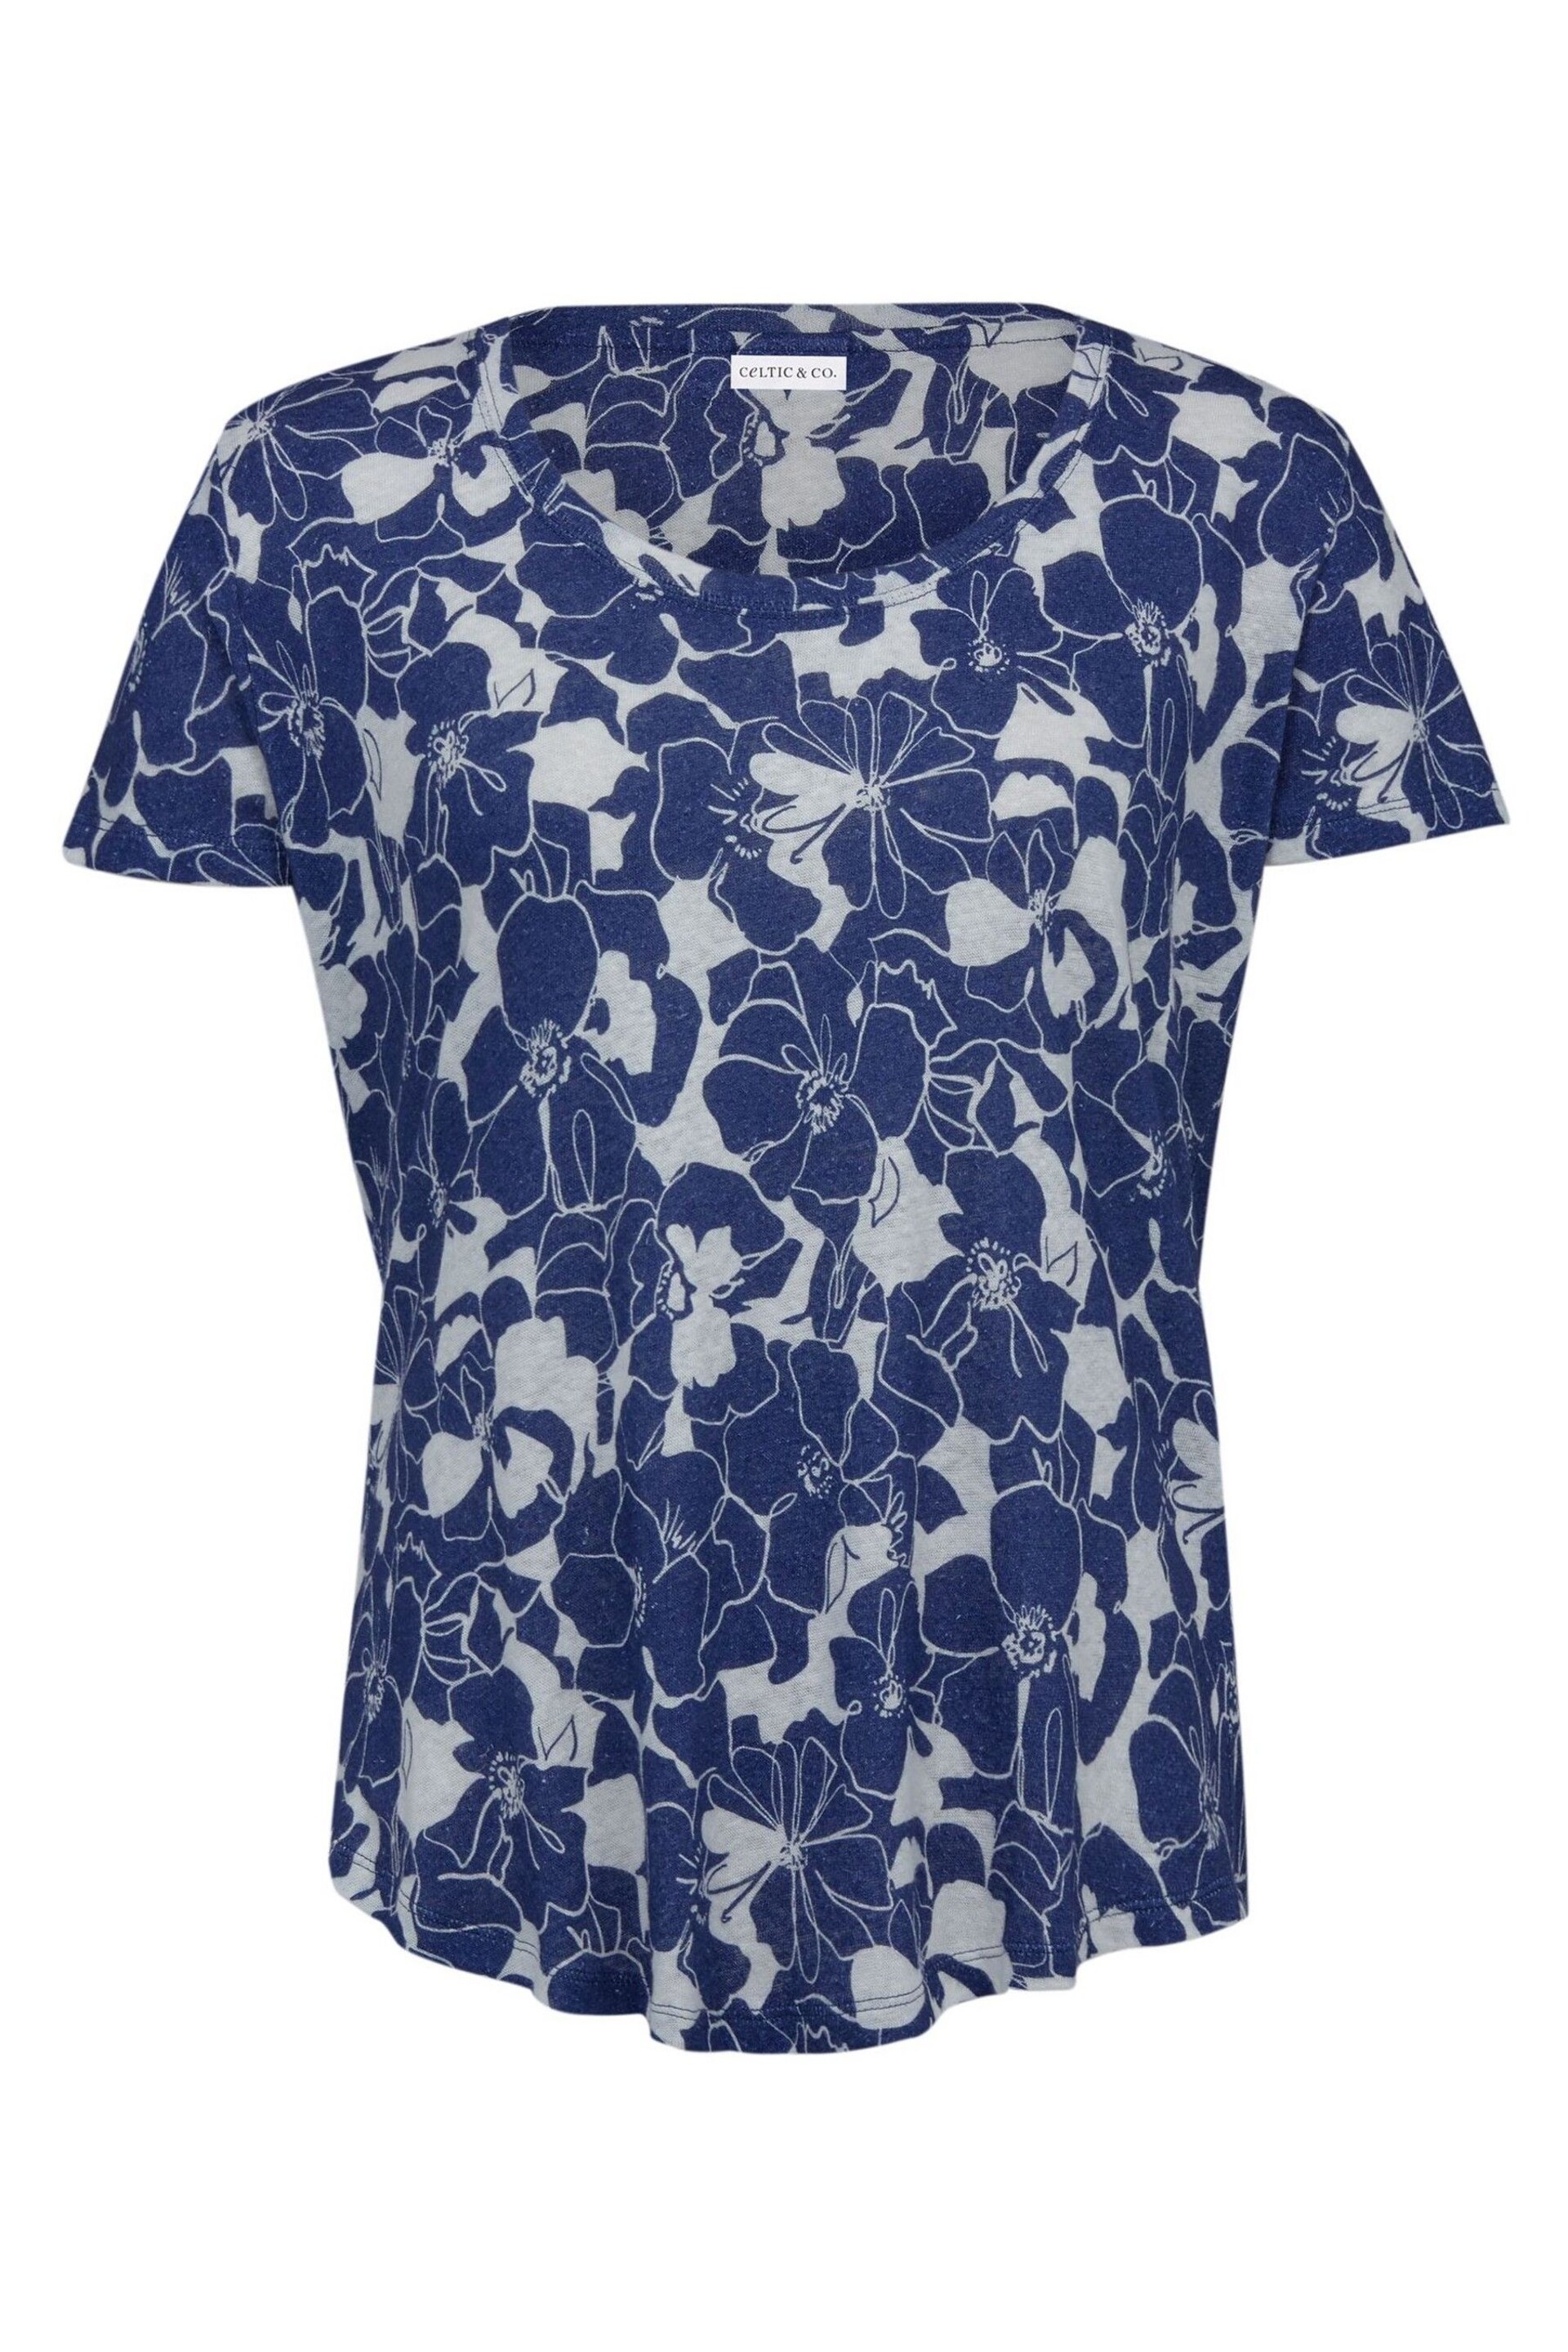 Celtic & Co. Blue Linen / Cotton Scoop Neck T-Shirt - Image 2 of 5